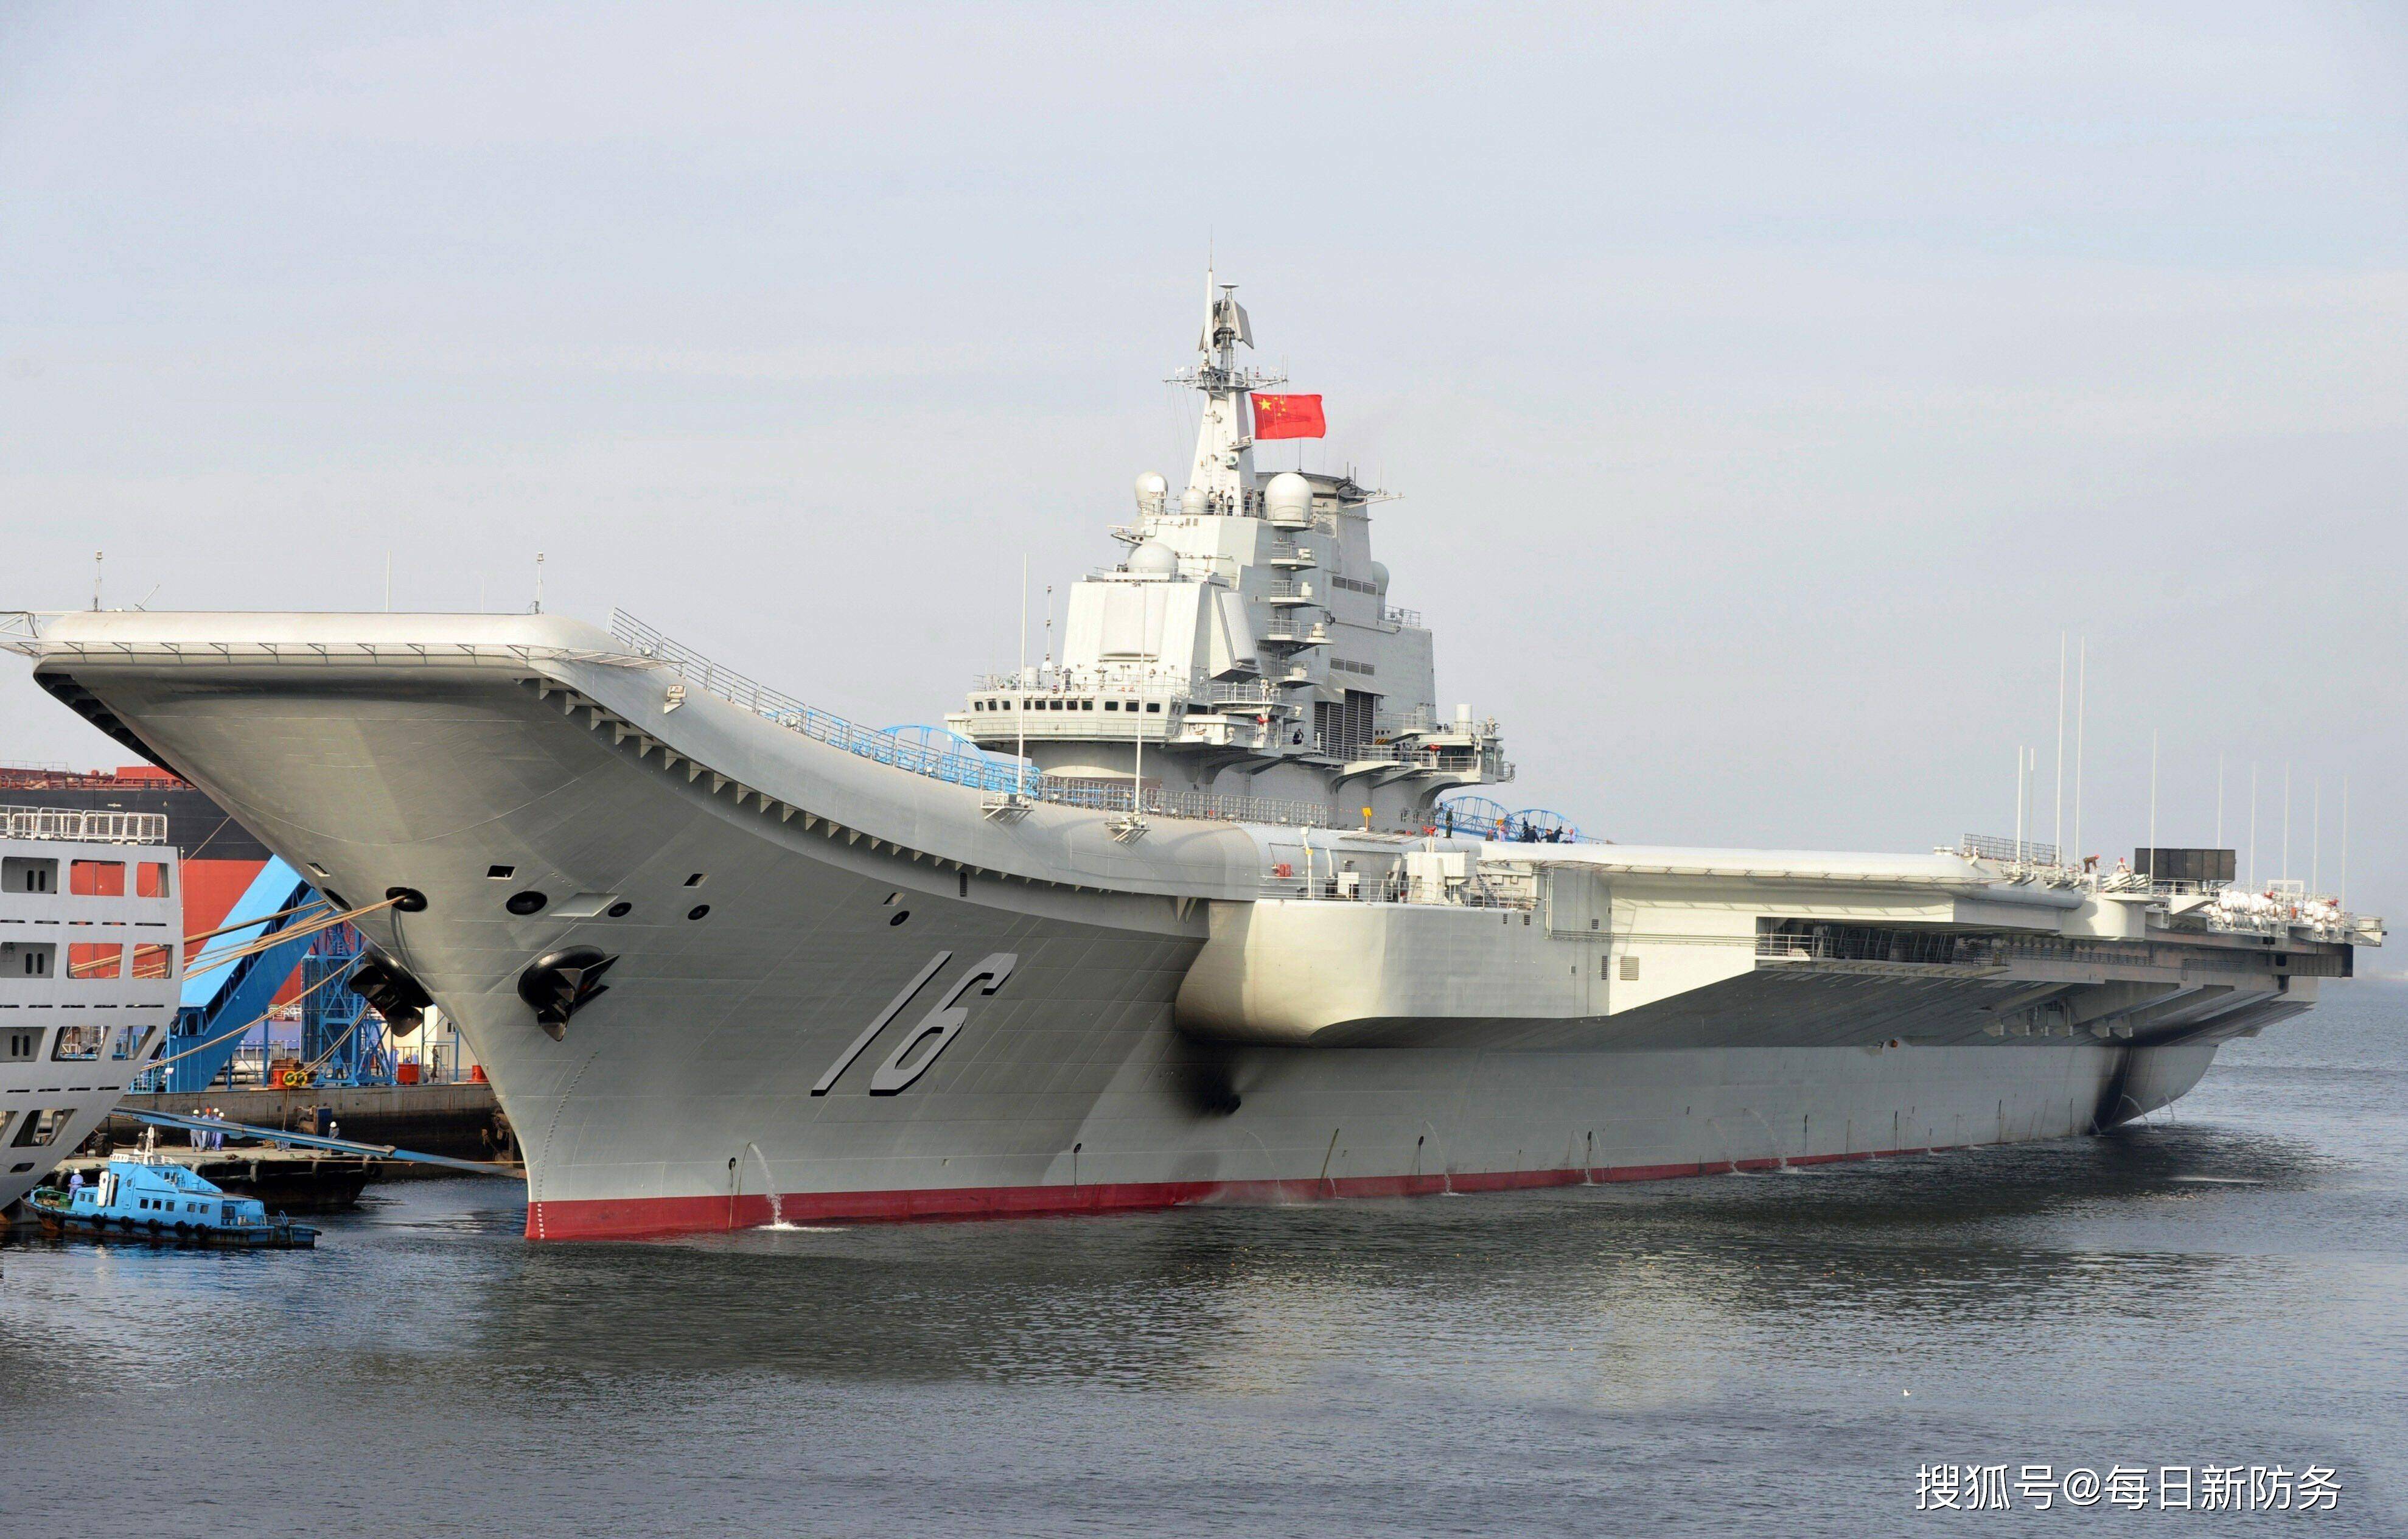 原创辽宁舰最新位置警示日本:中国有不战而胜的自信,不希望台湾有事